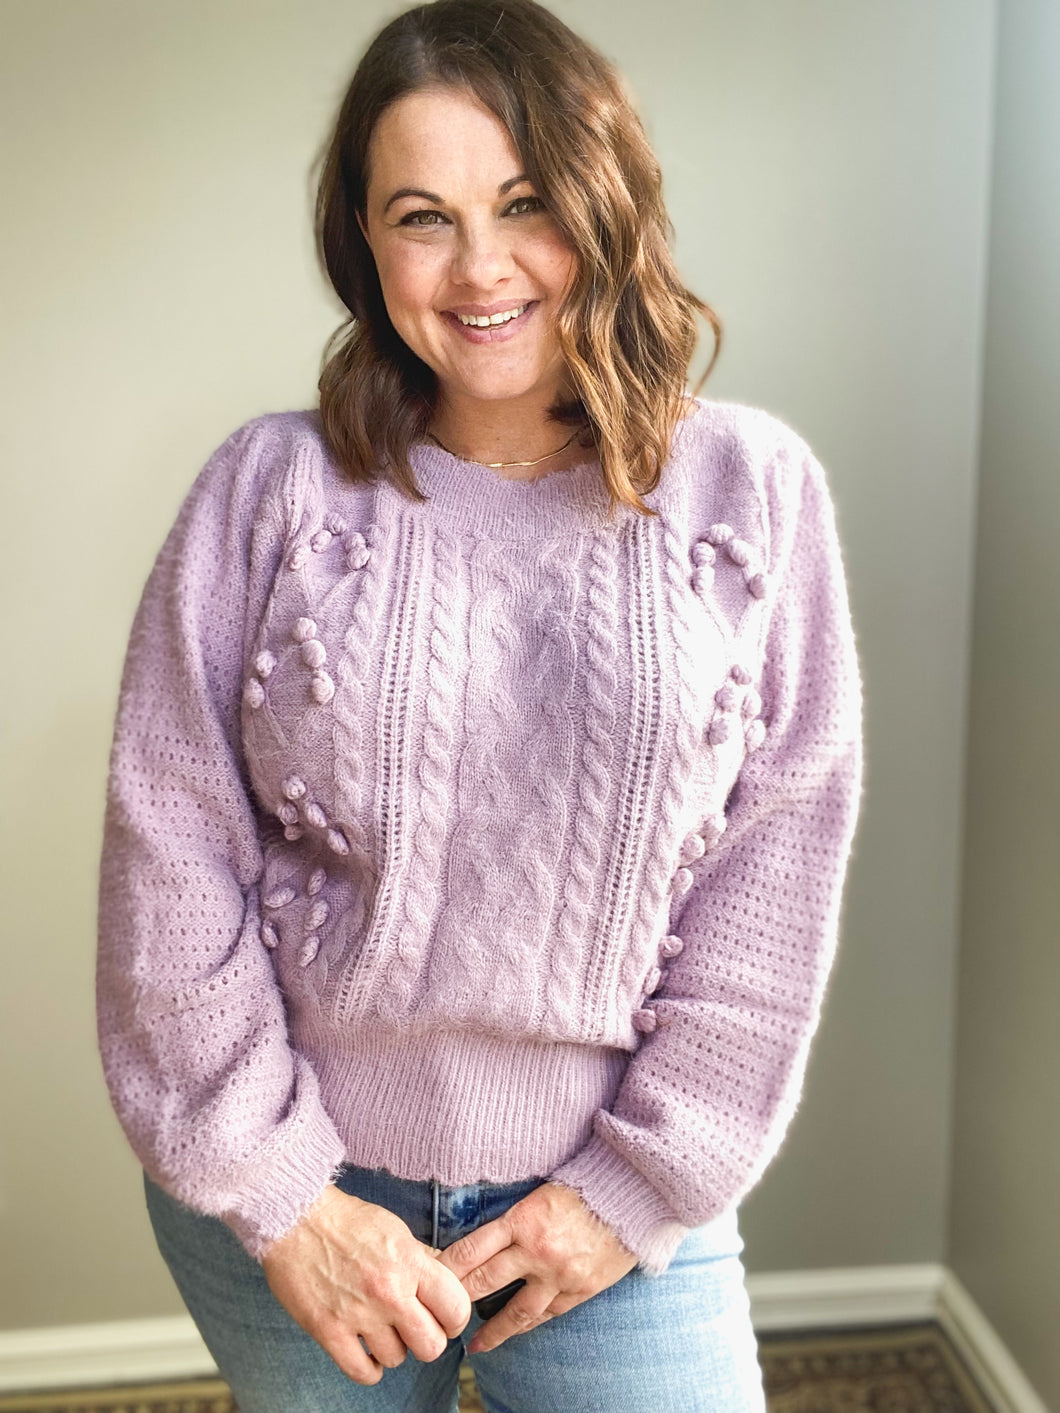 Shannon Pom Pom Knit Sweater